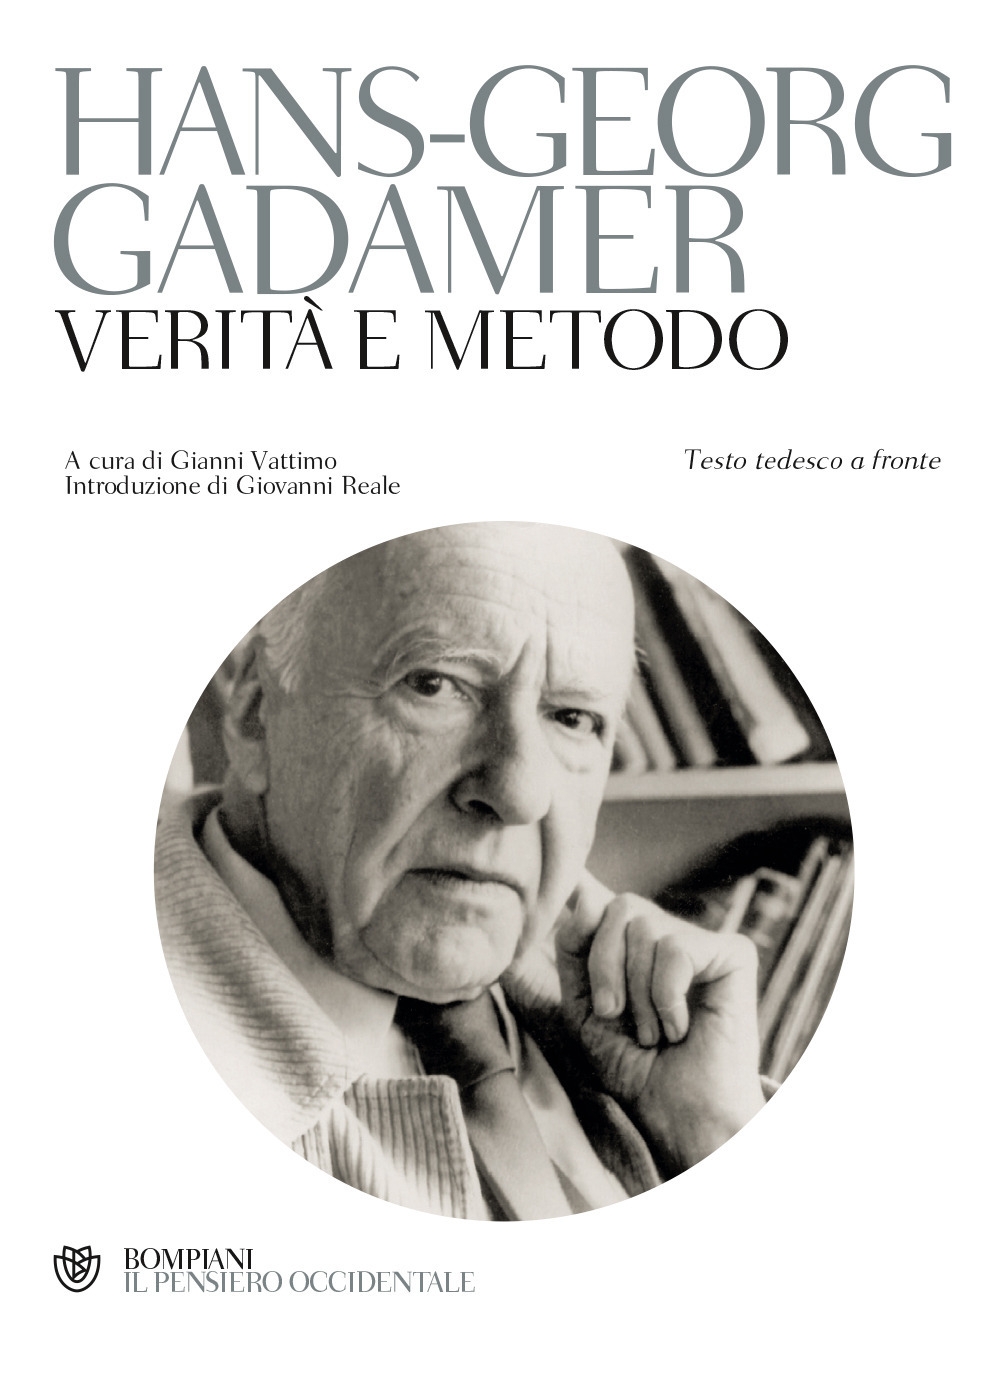 Verità e metodo - Gadamer Hans Georg